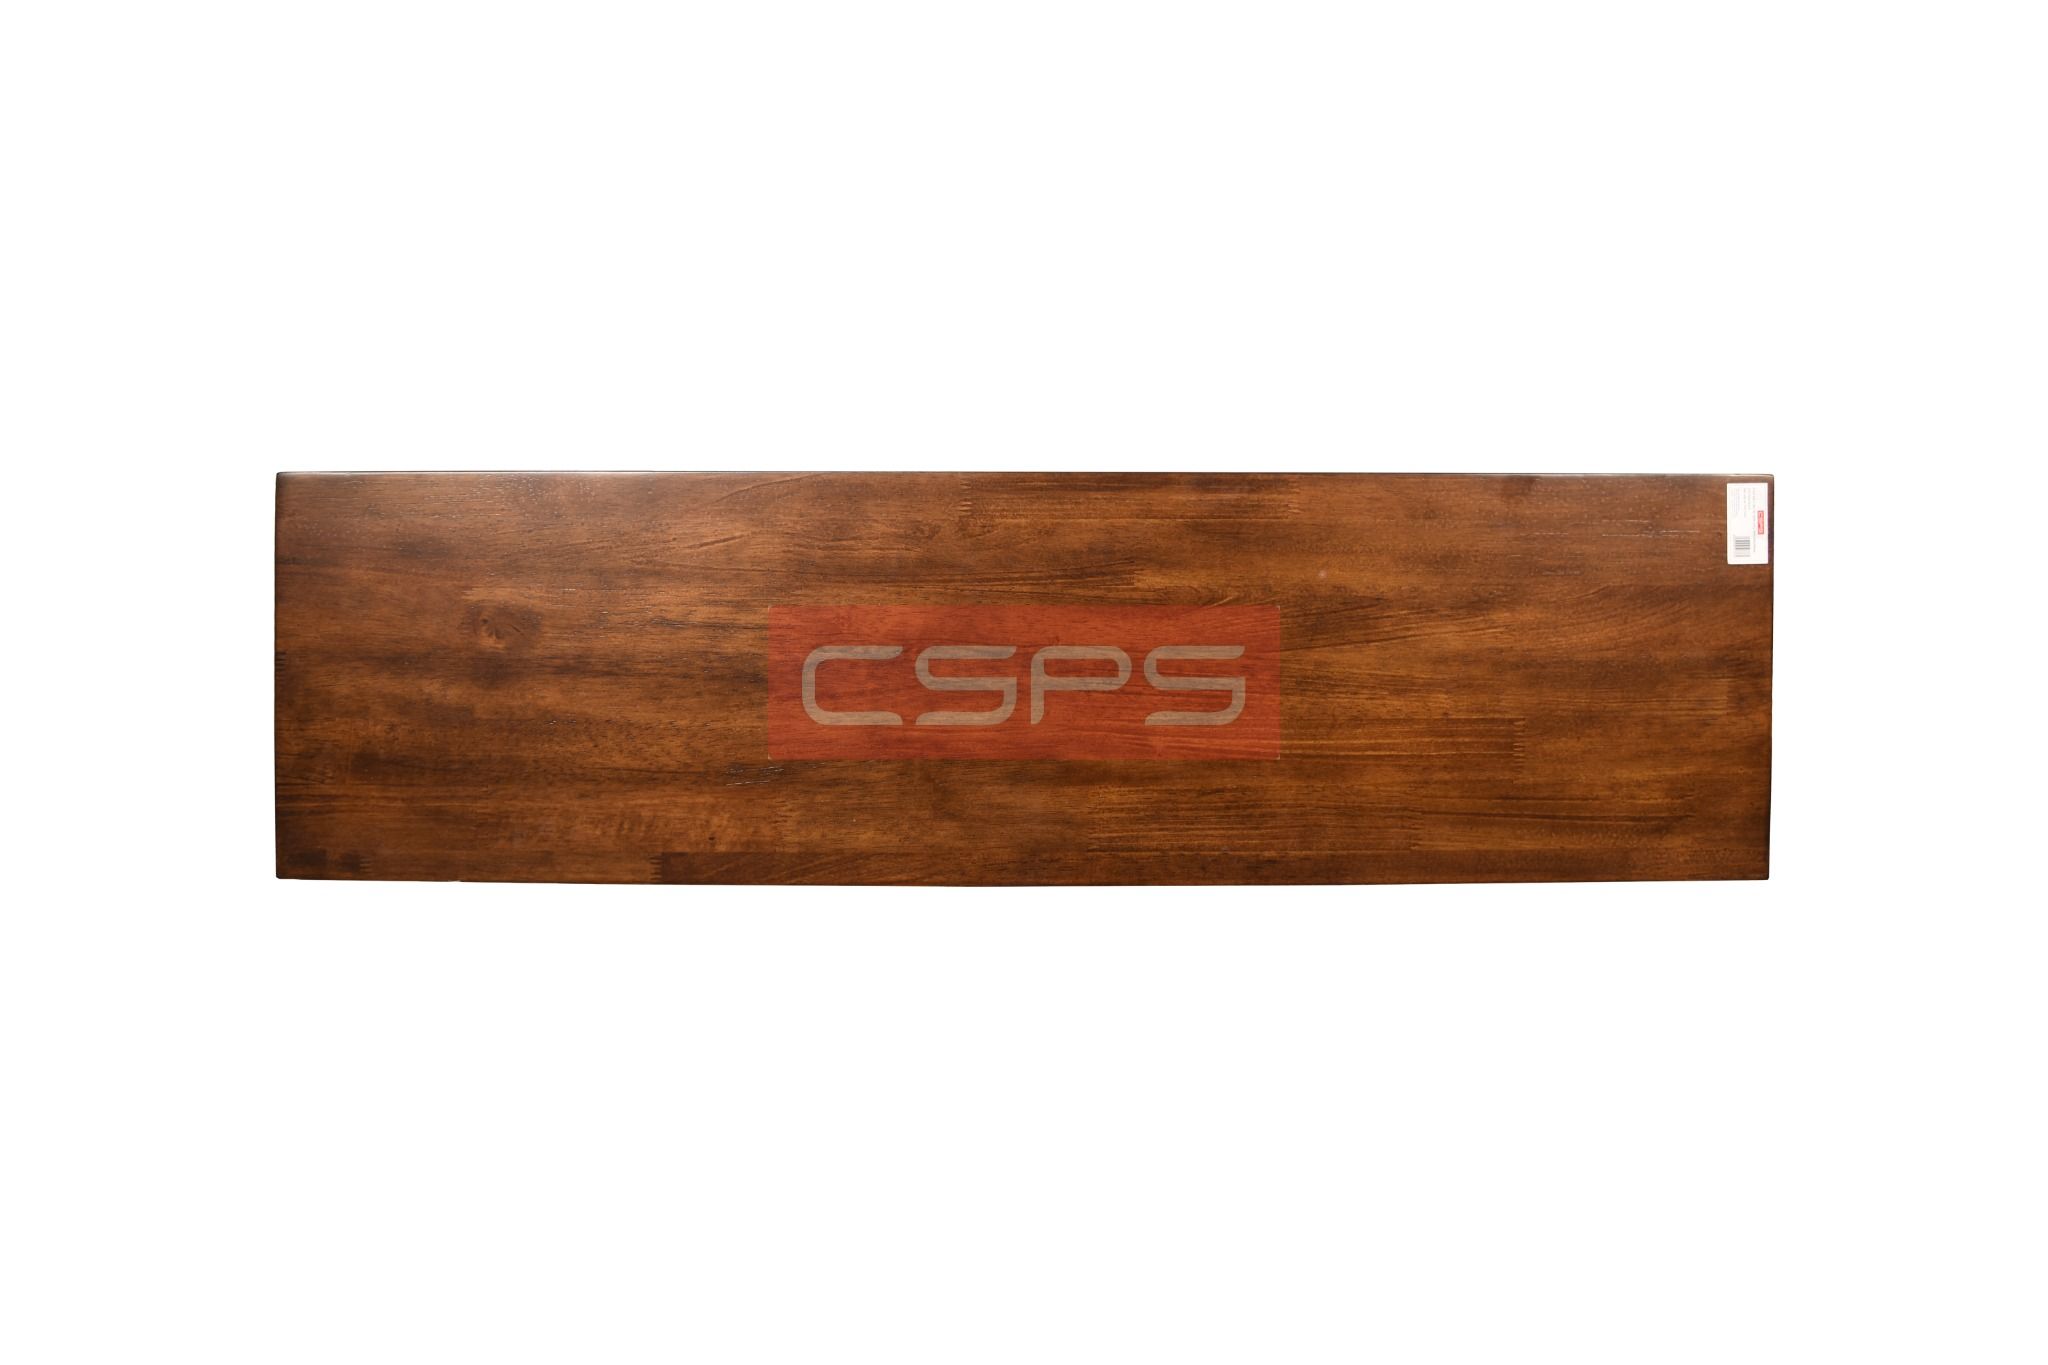  Ván gỗ cao su CSPS màu nâu/xám/PU/tự nhiên 